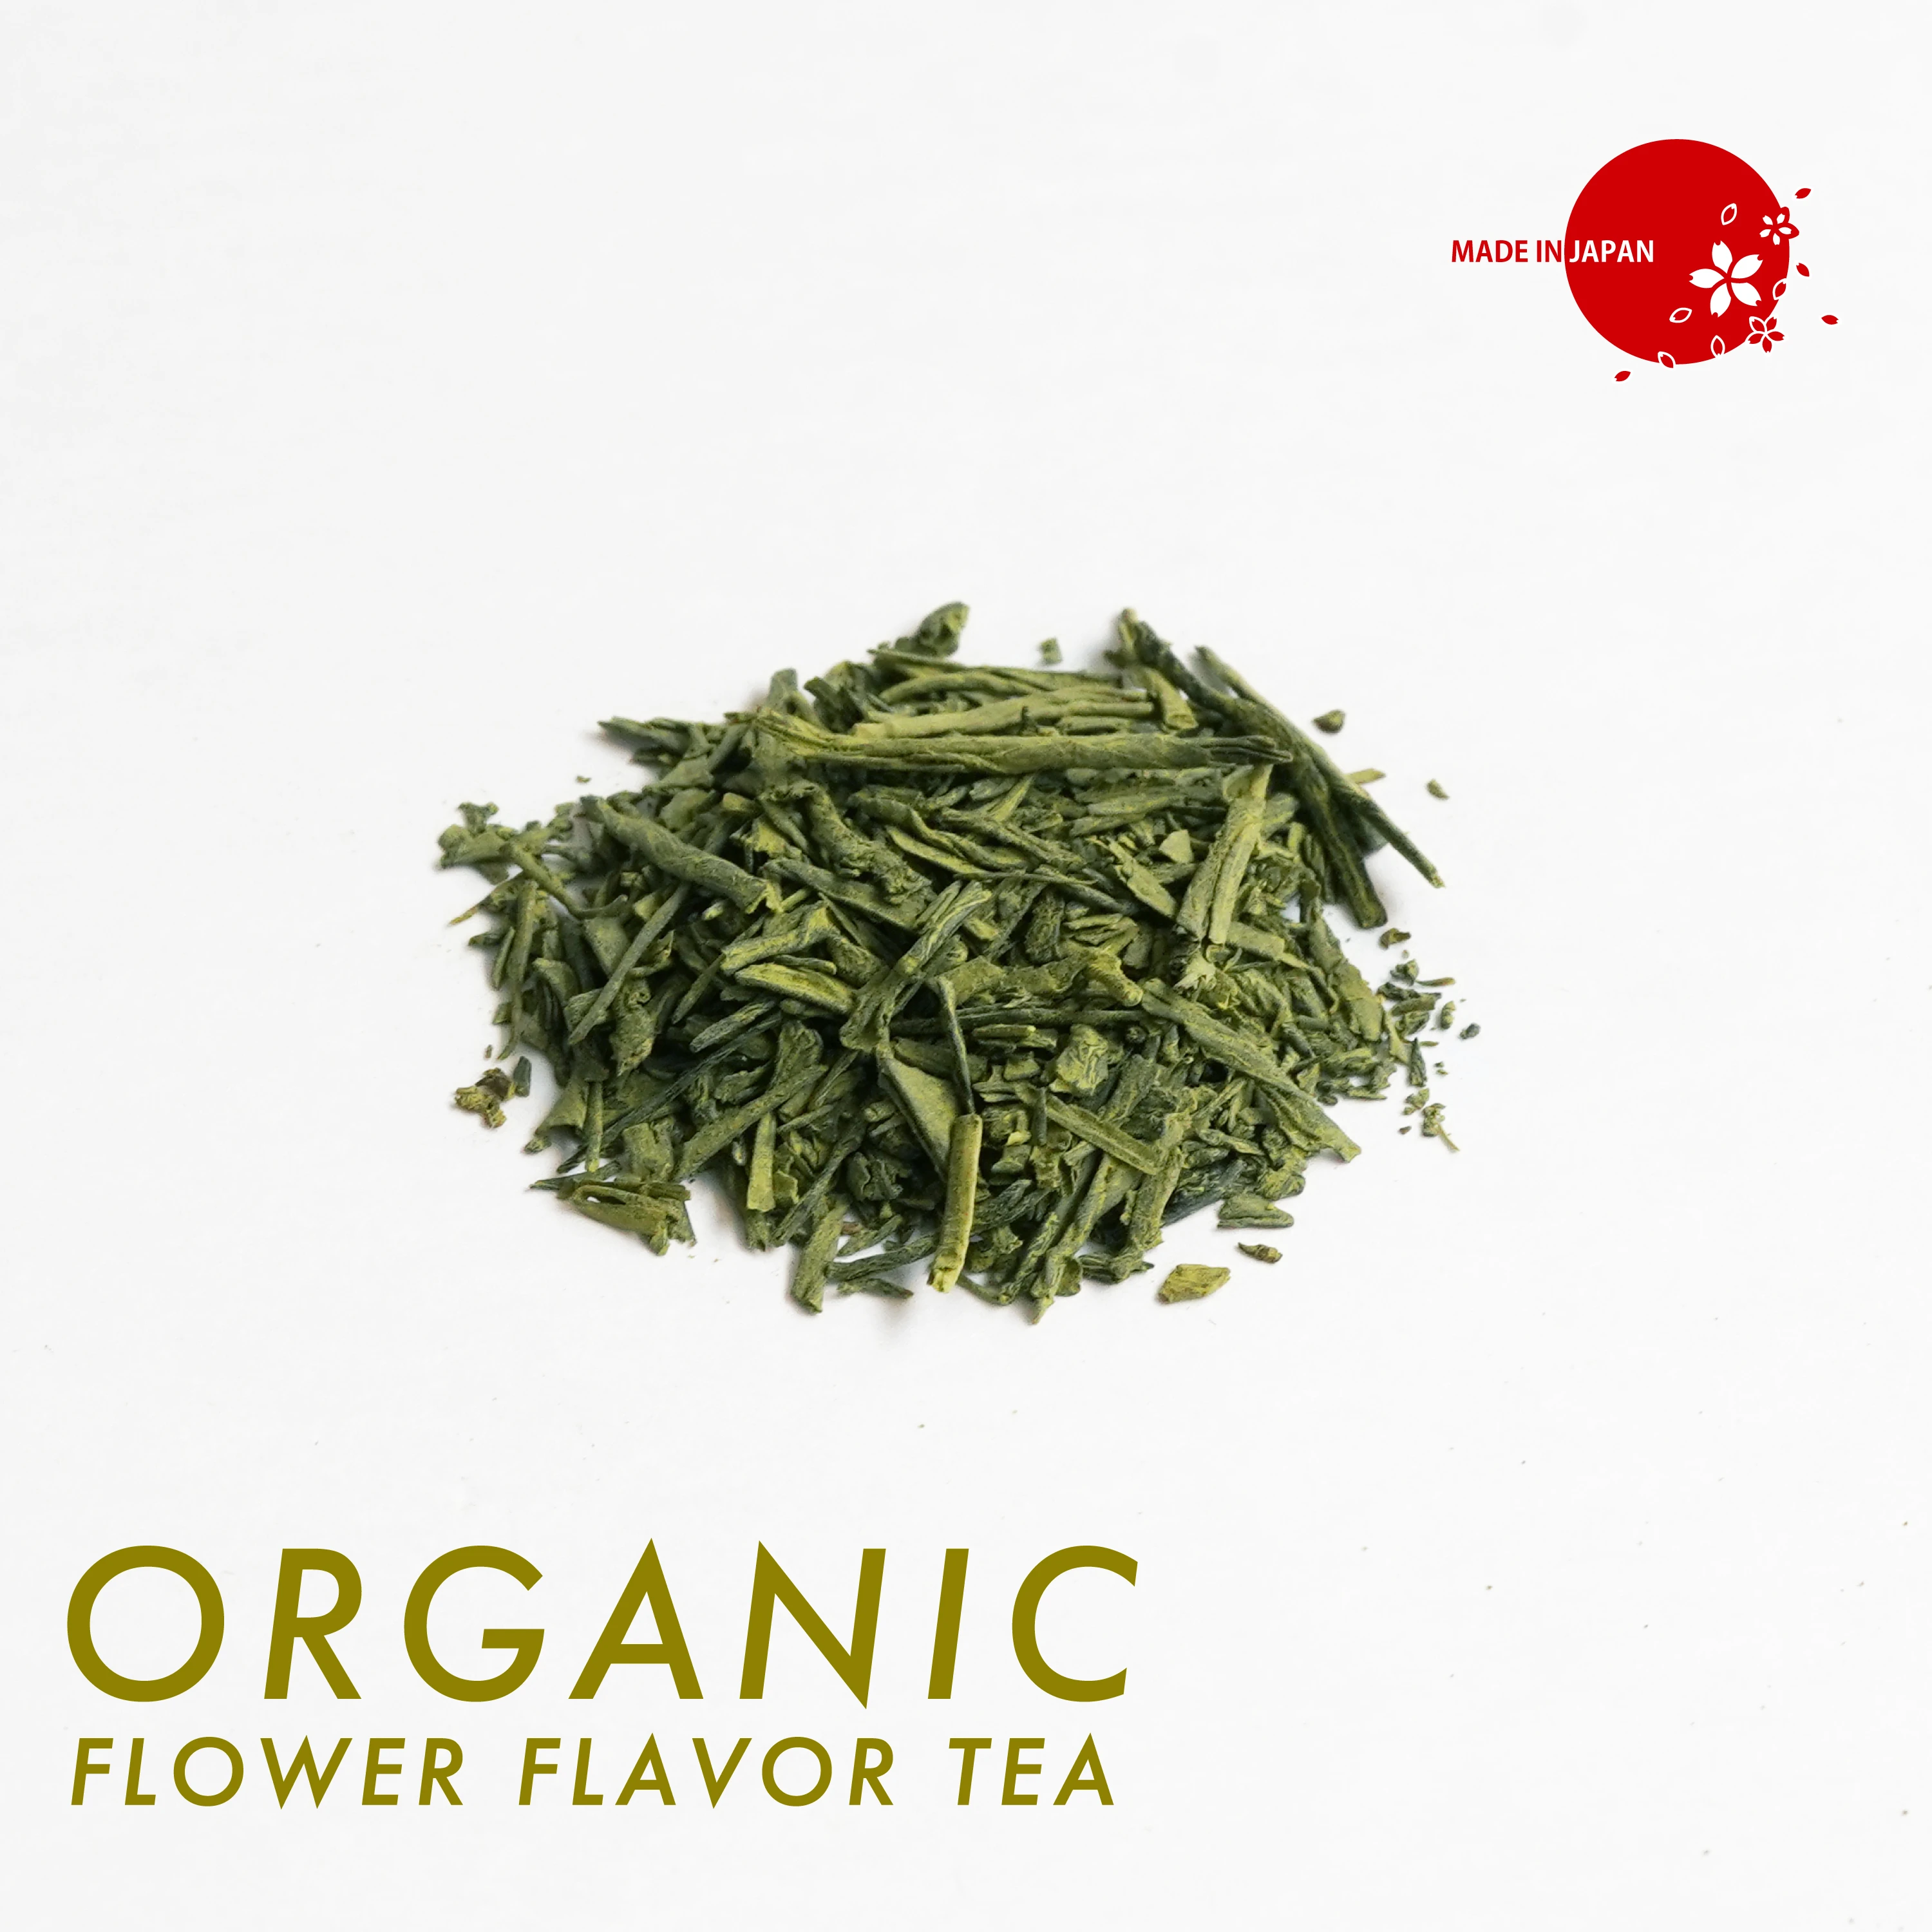 Japanese Organic leaves flavored green tea #ROSE#SAKURA#JASMINE#KINKA